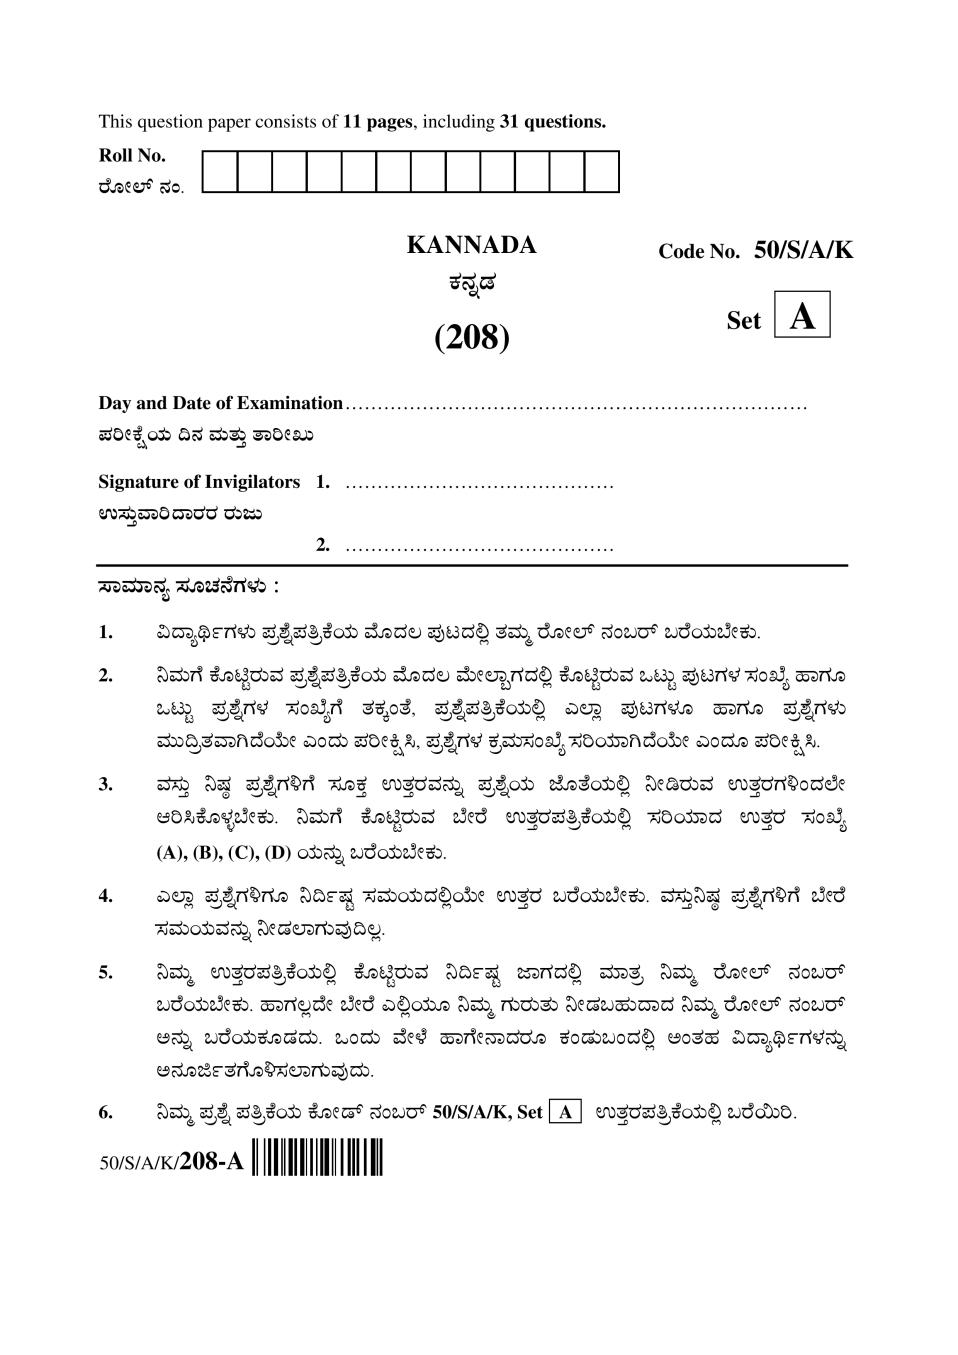 NIOS Class 10 Question Paper Apr 2015 - Kannada - Page 1